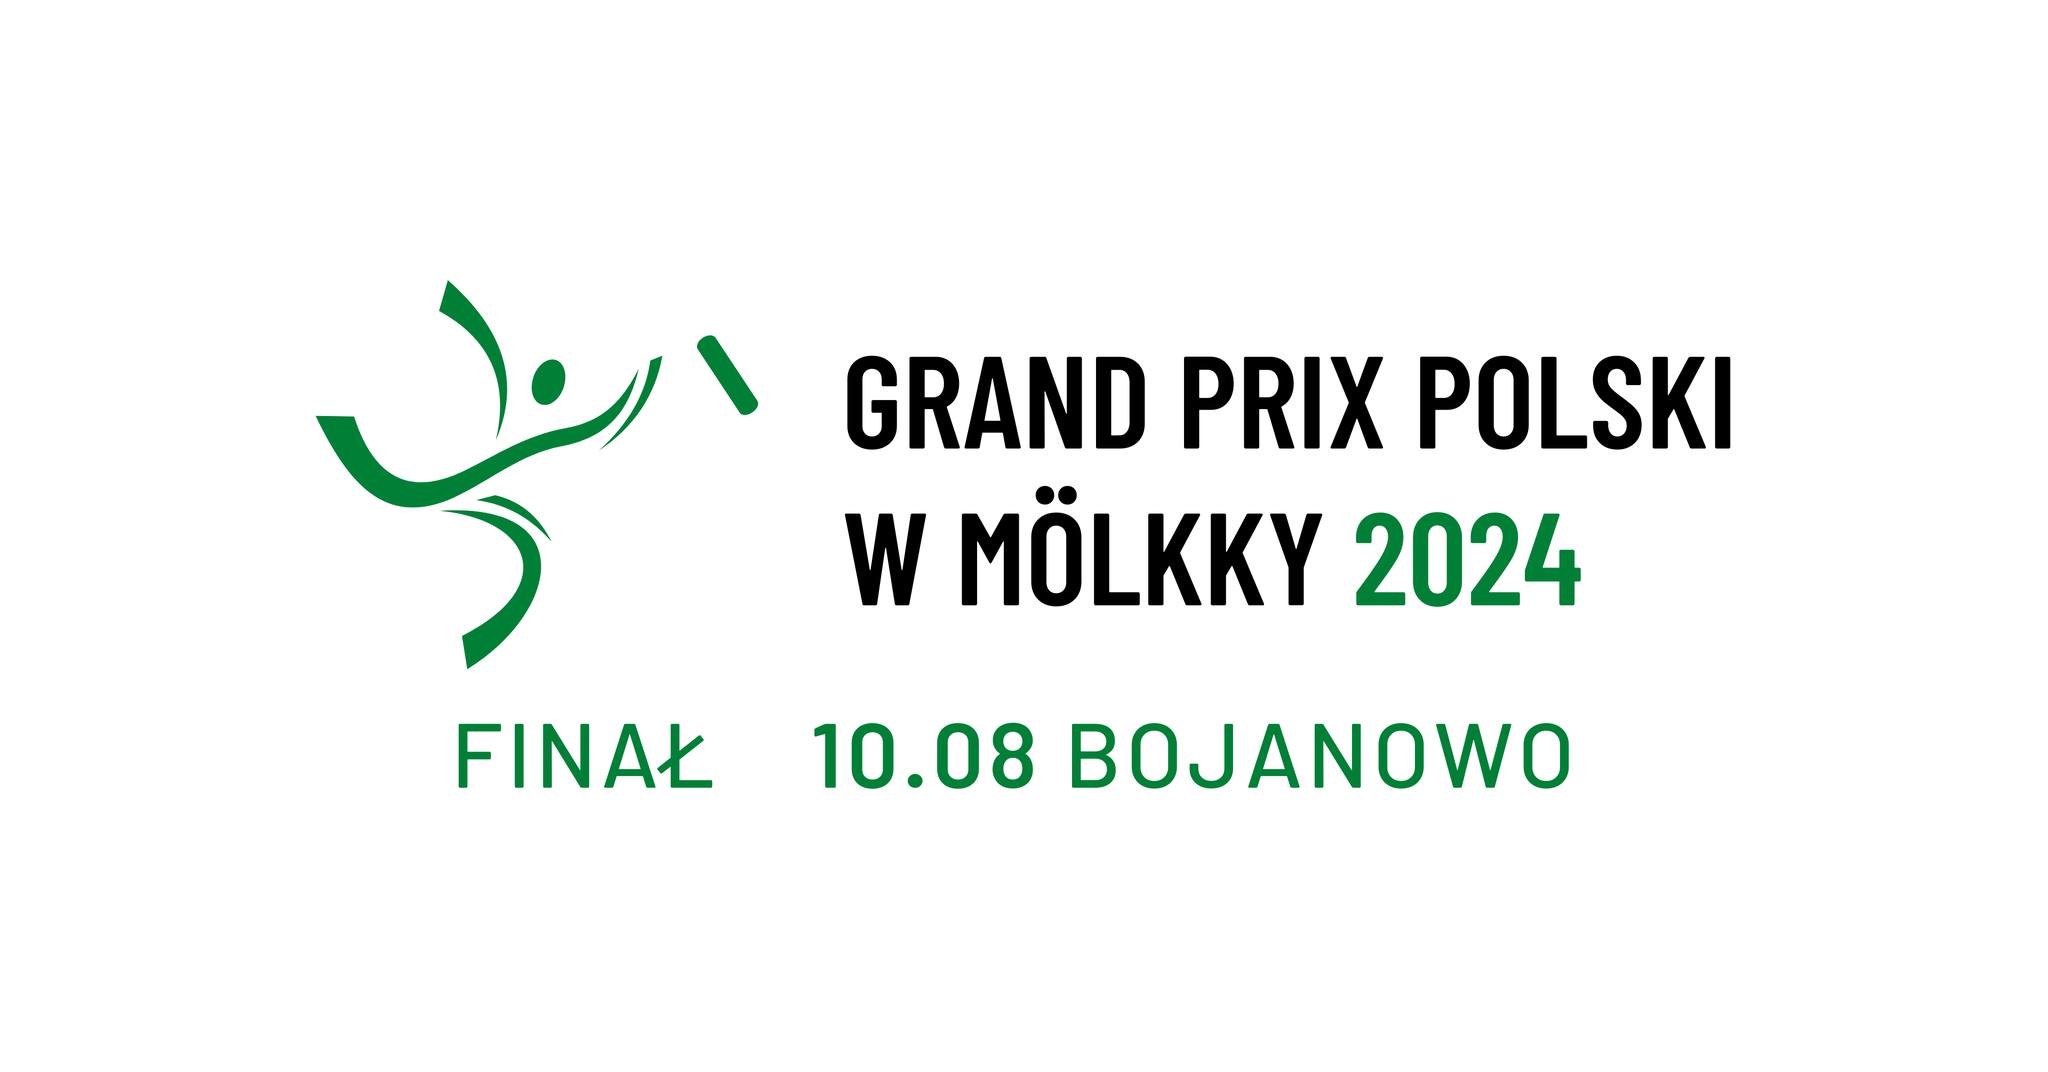 Grand Prix of Poland - event 5/5 (FINAL)